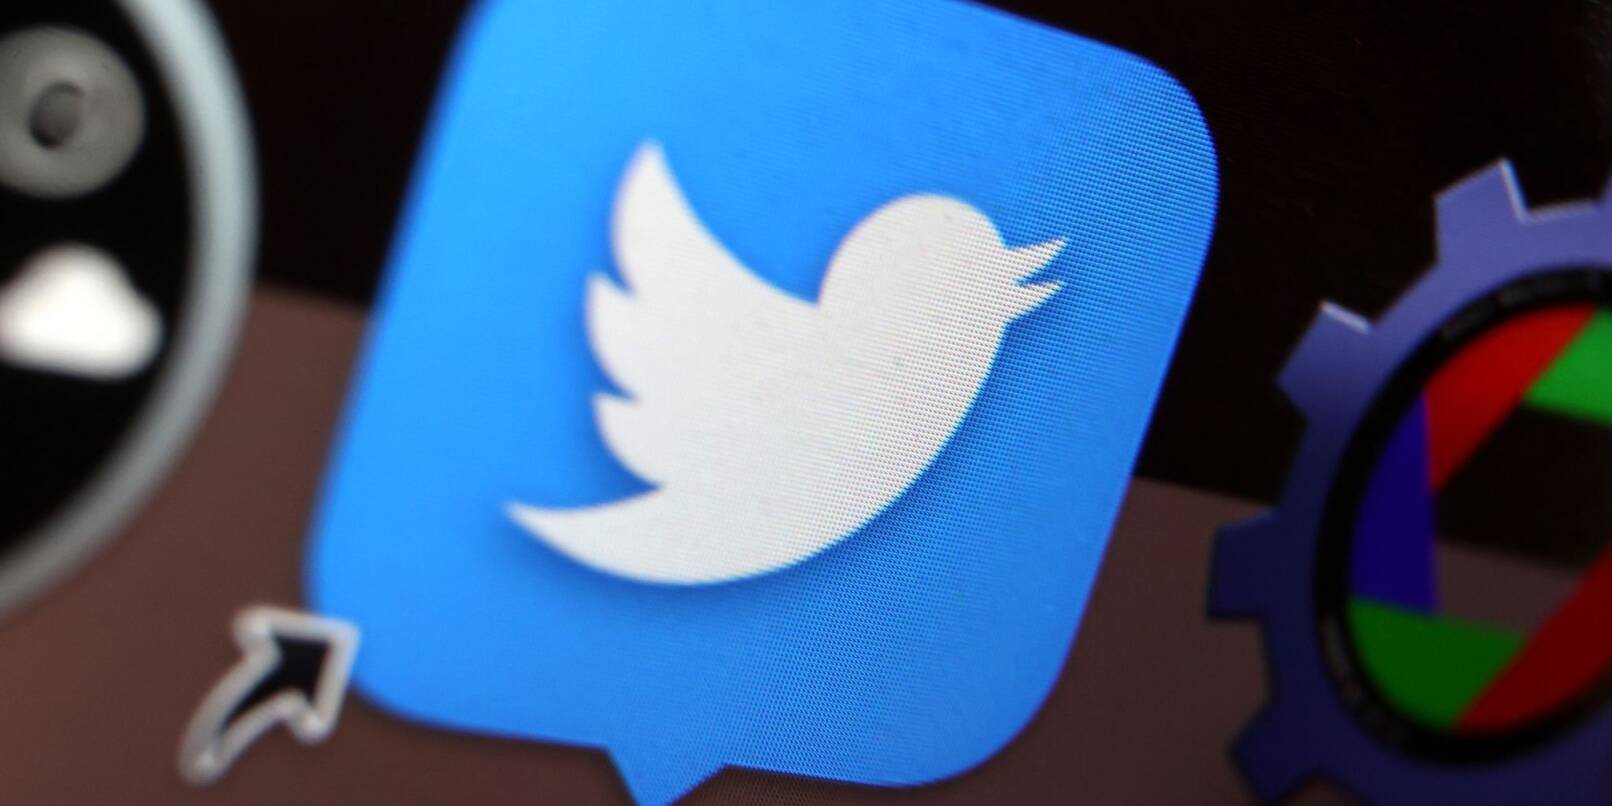 Erst kürzlich wurde bekannt, dass Twitter eine freiwillige EU-Vereinbarung zum Kampf gegen die Verbreitung von Falschinformationen im Netz verlassen hat.